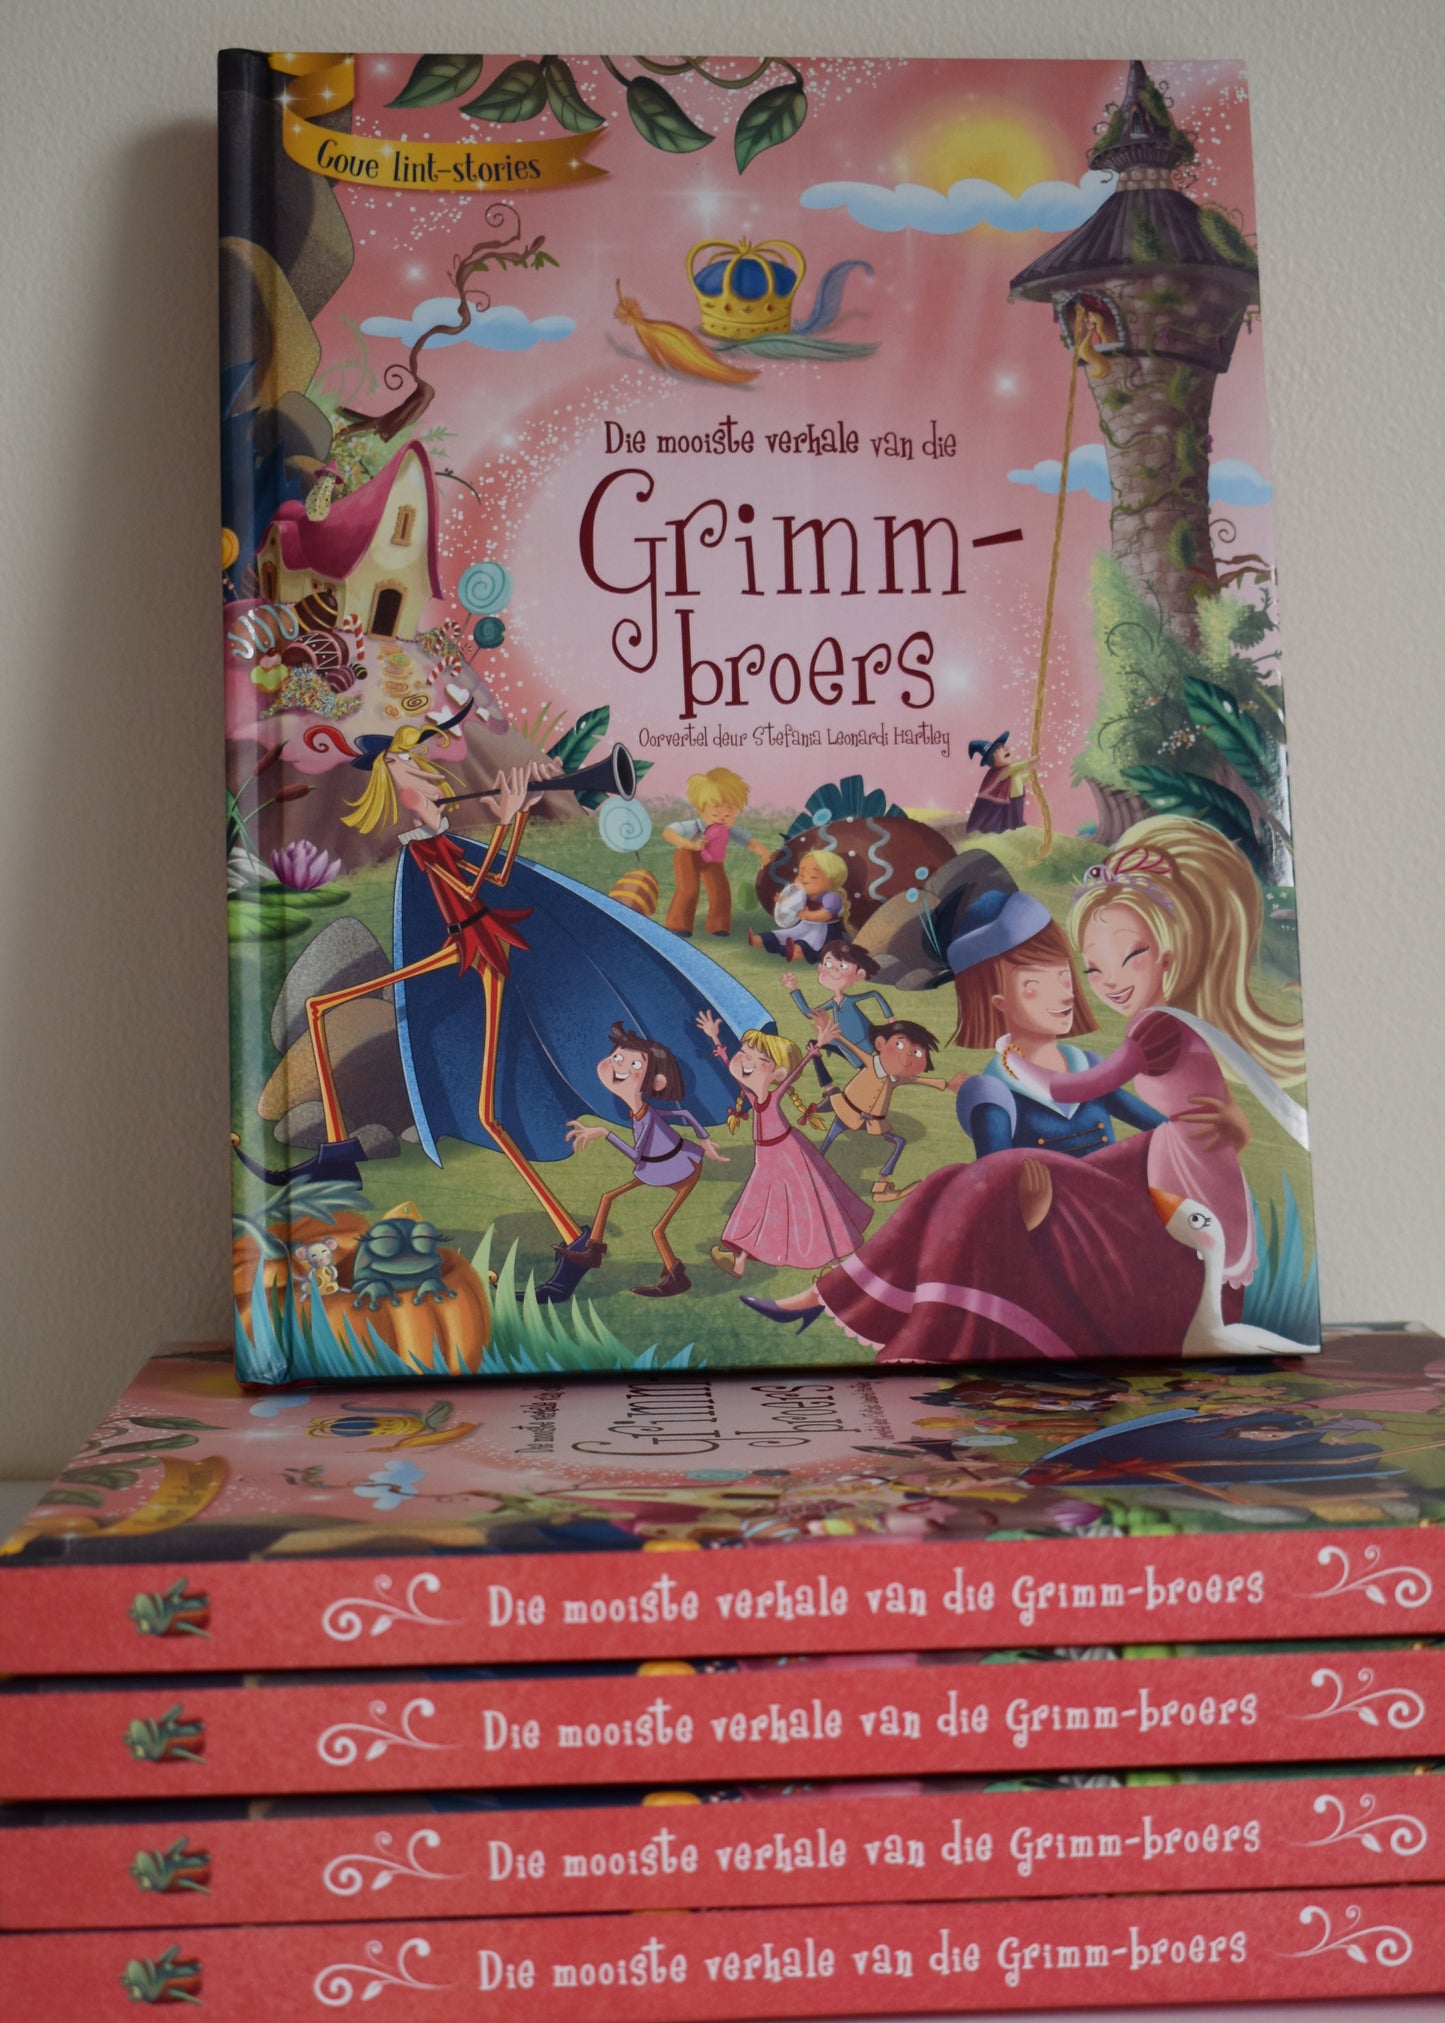 Goue lint-stories: Die mooiste verhale van die Grimm-broers